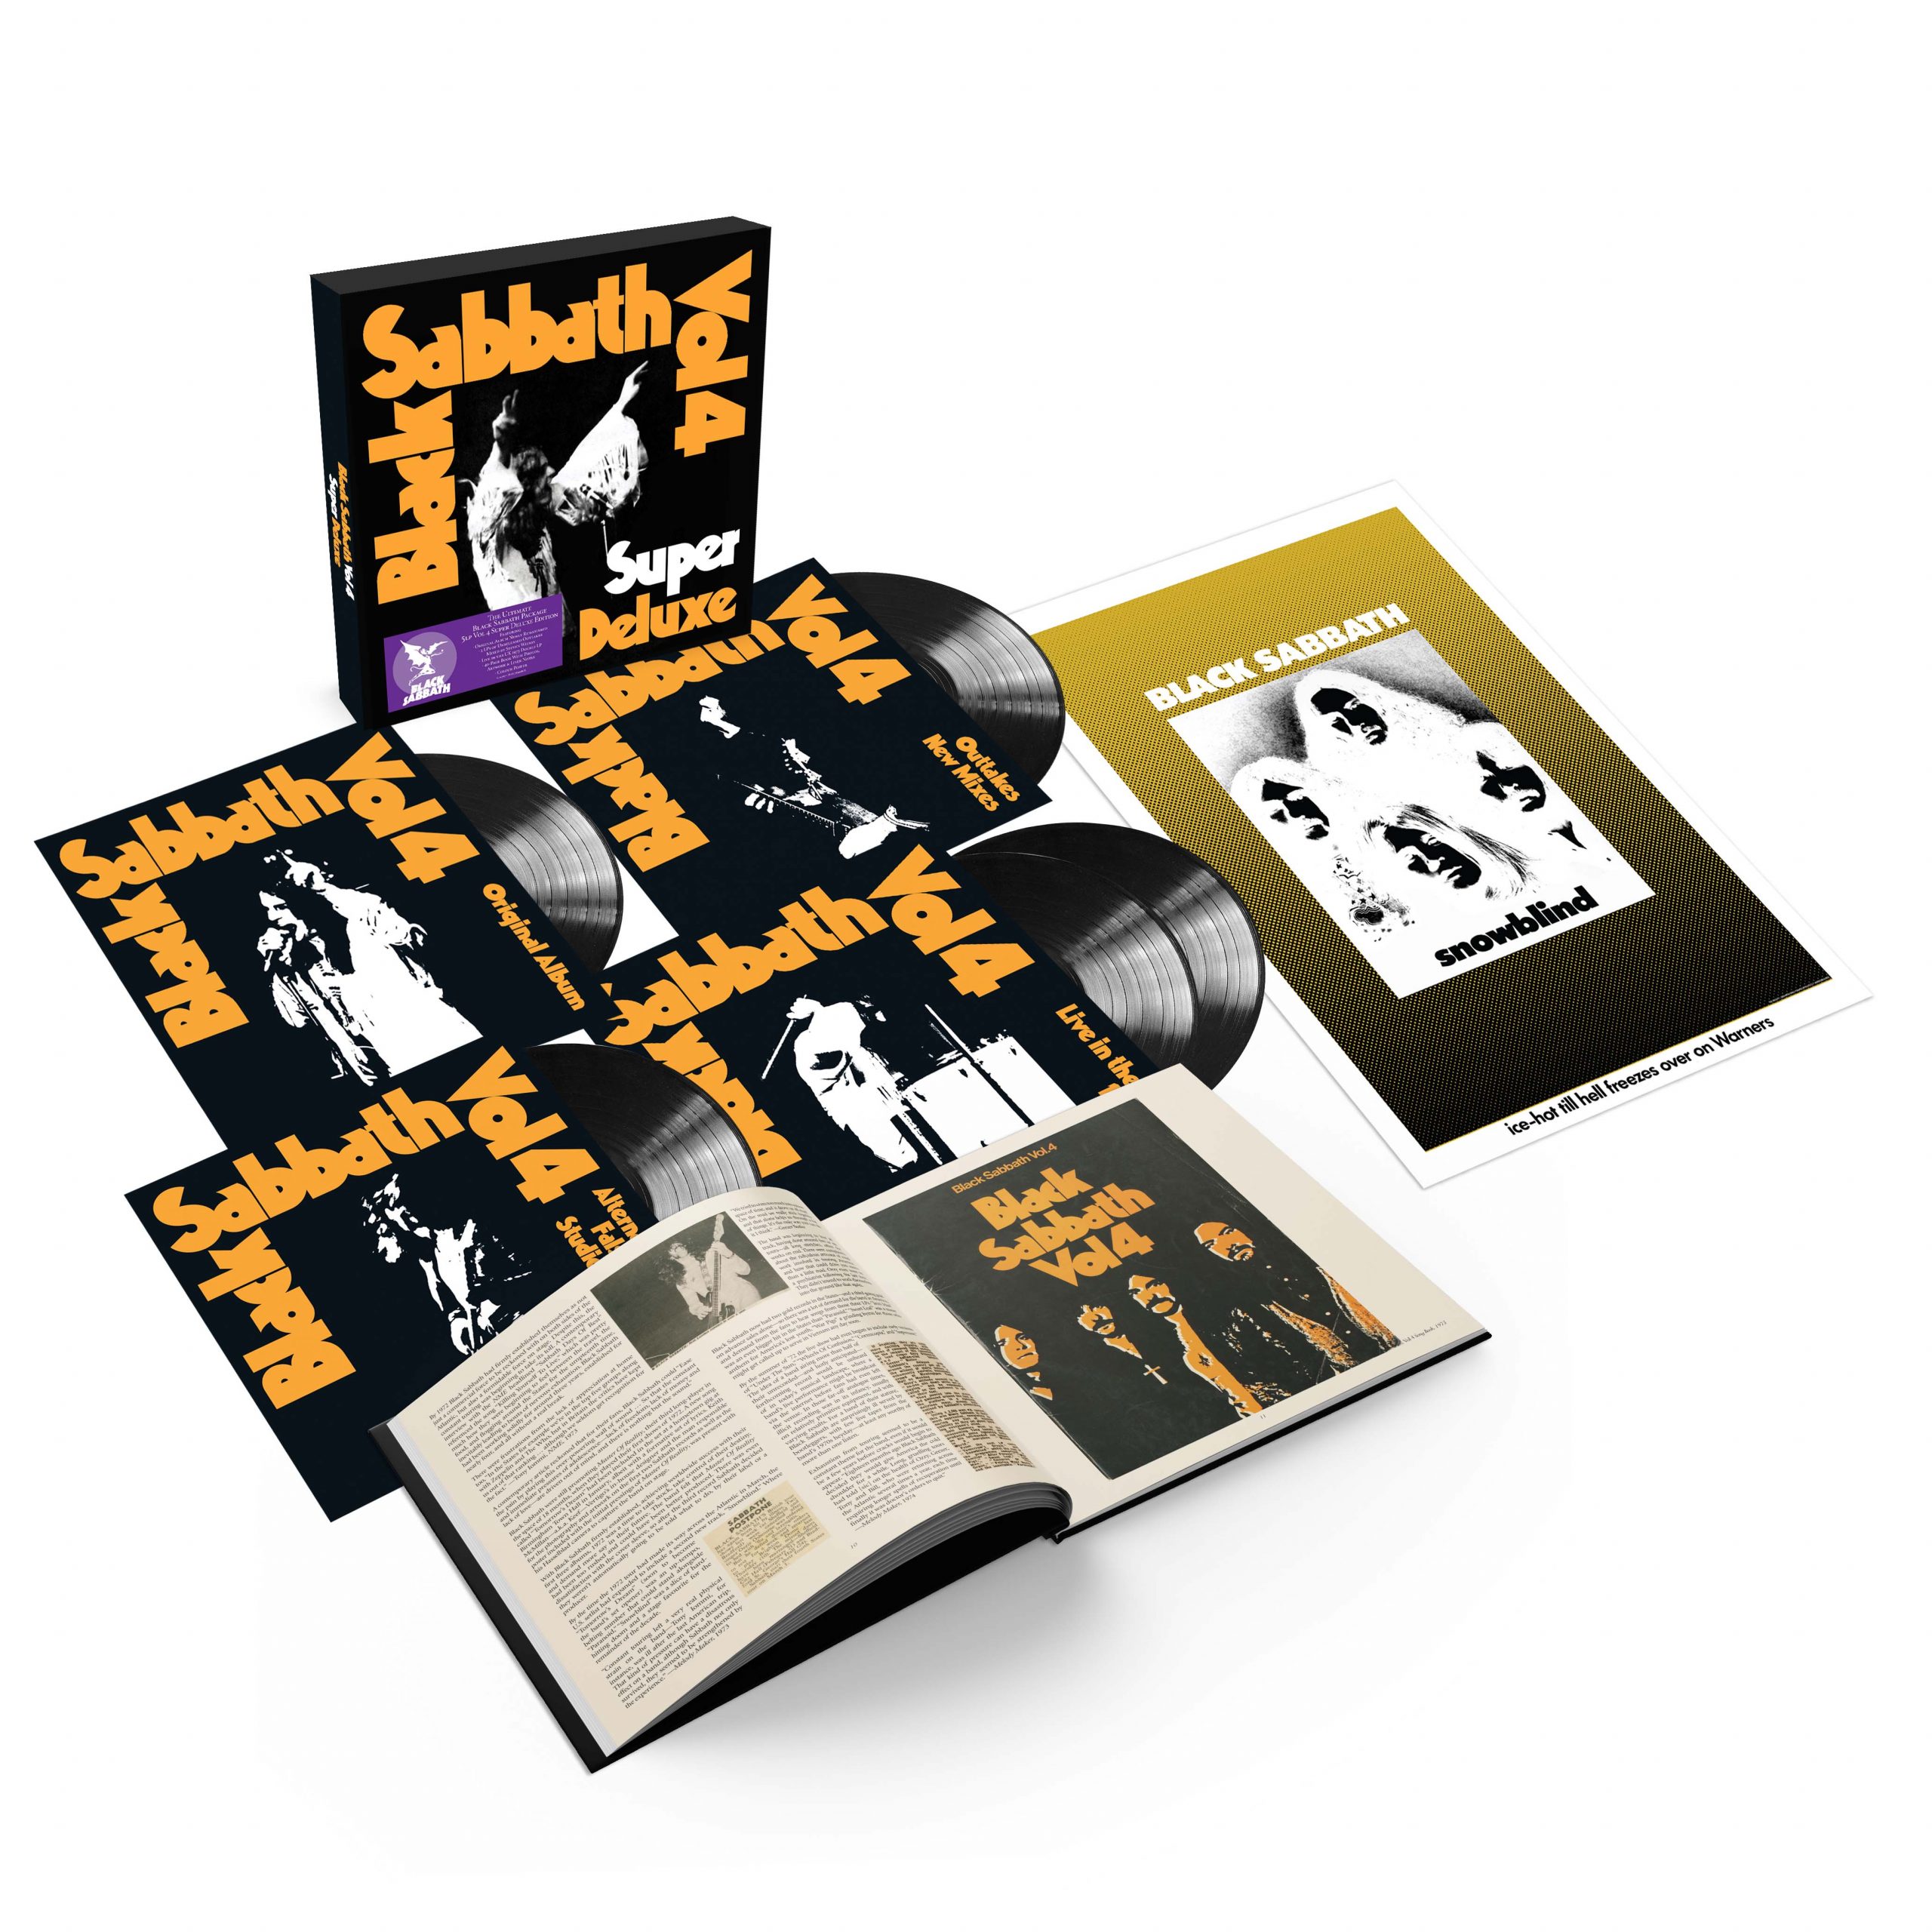 The Complete 70's Replica CD Collection — Black Sabbath